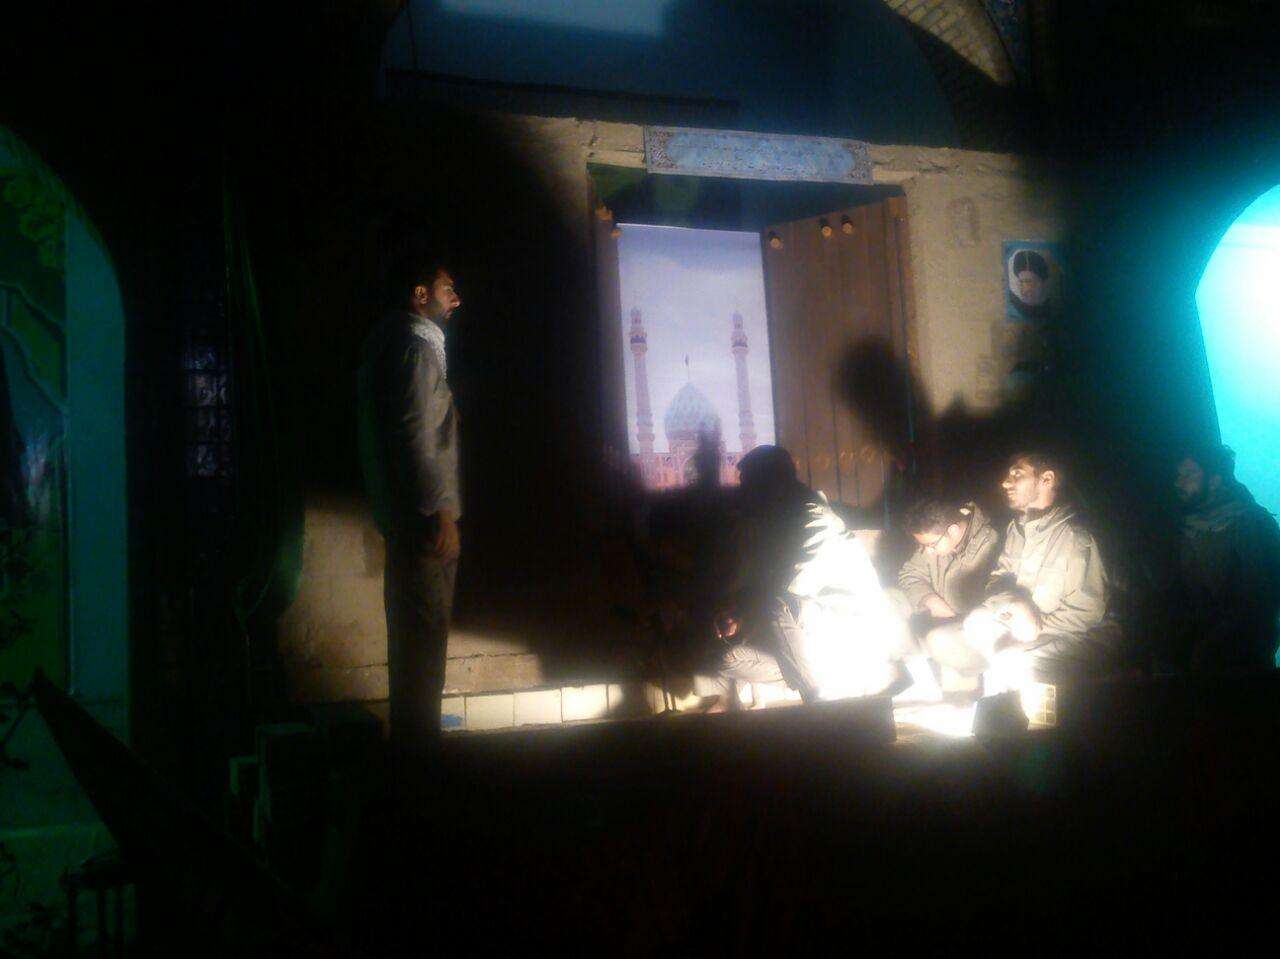 اجرای تئاتر "از واقعه ی غدیر تا سوریه" در یادمان هویزه توسط هنرمندان گمنام